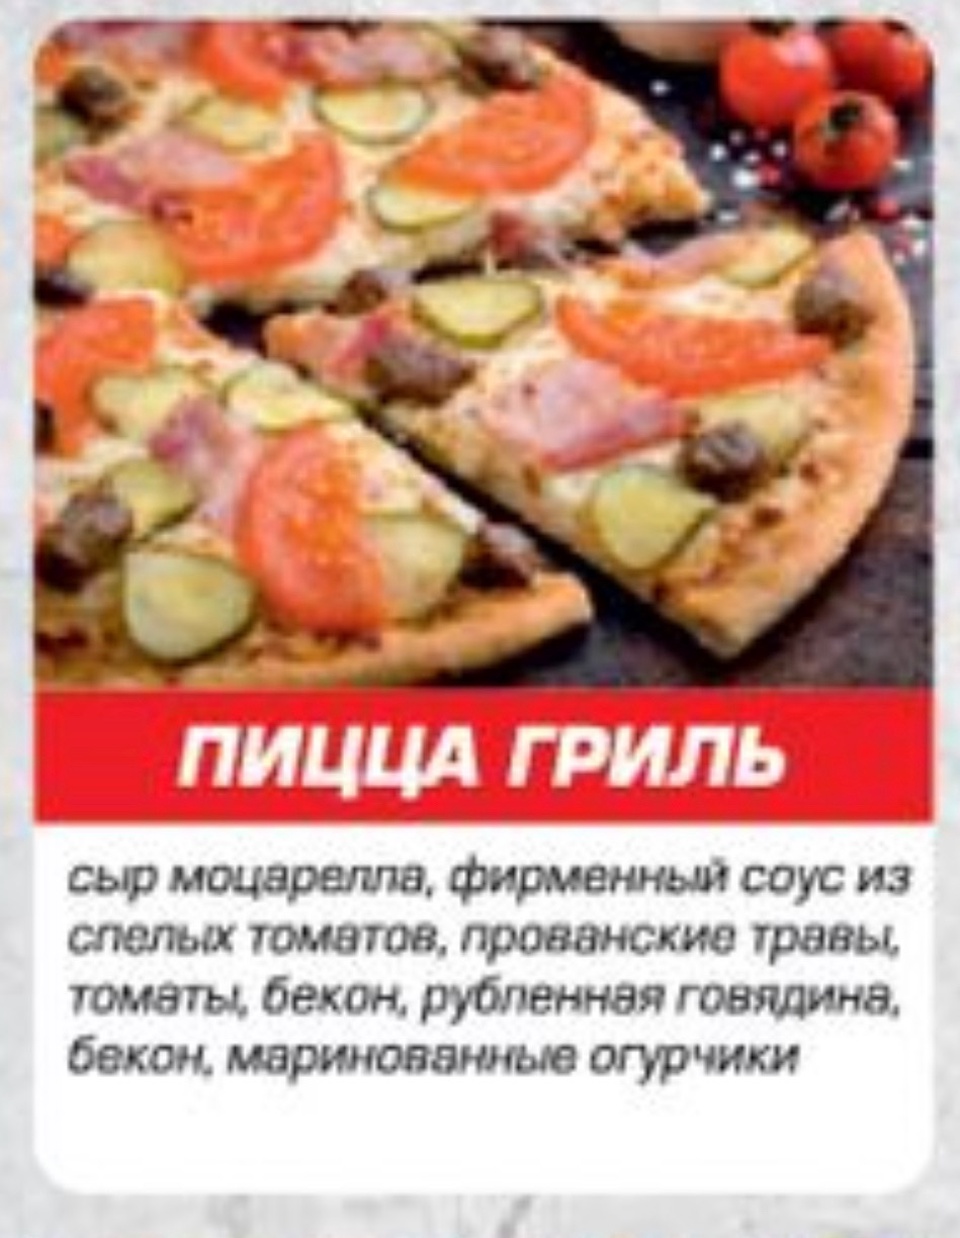 Пицца гриль - 499 ₽, заказать онлайн.